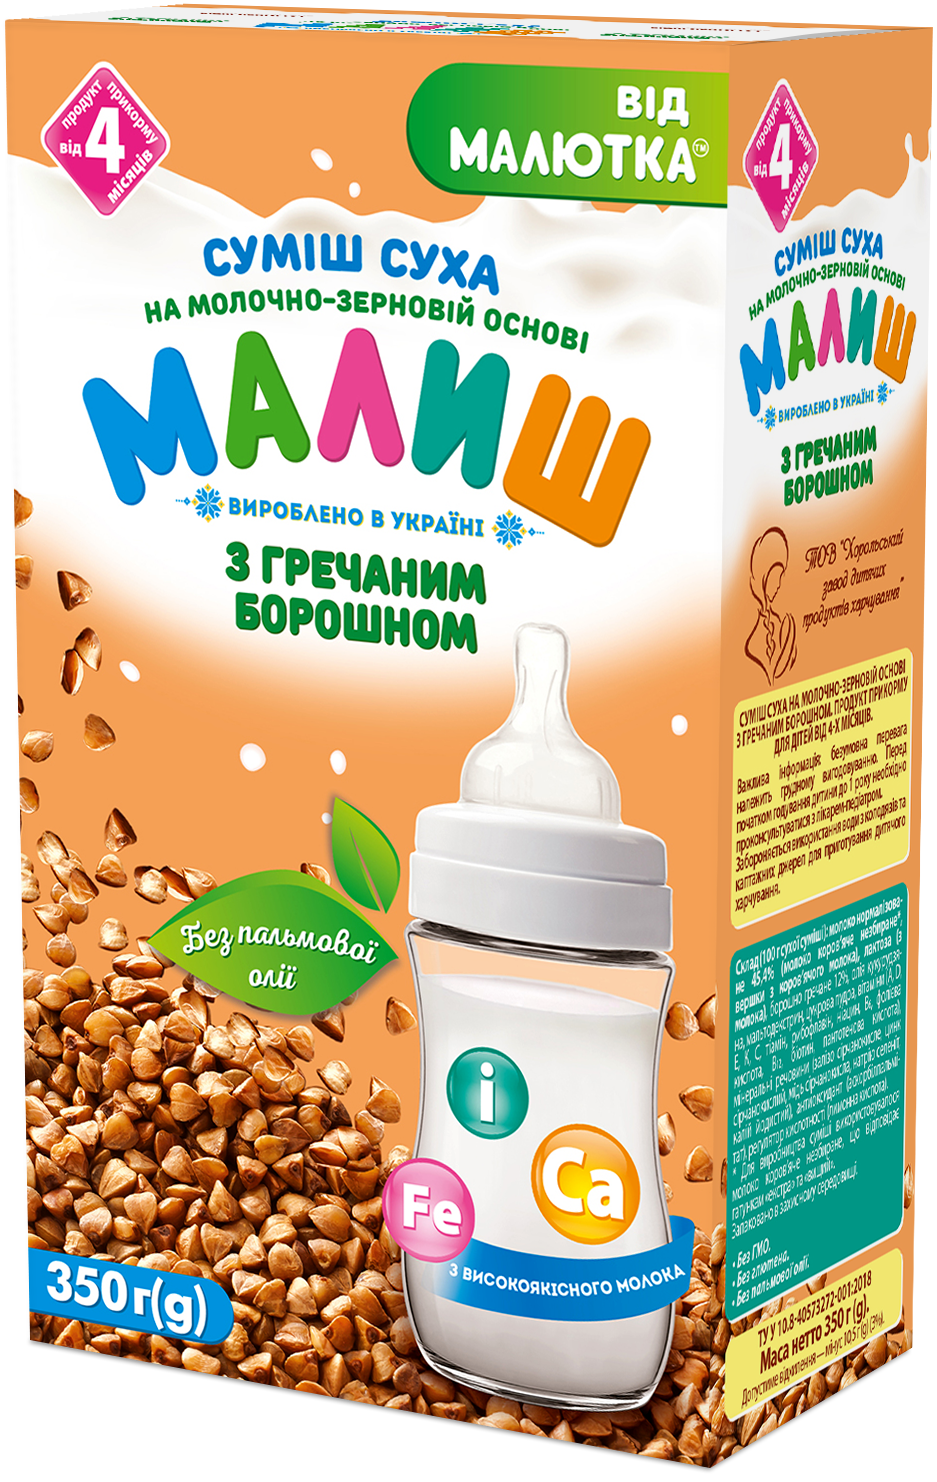 Суміш суха на молочно-зерновій основі з гречаним борошном. Продукт прикорму для дітей від 4-х місяців.